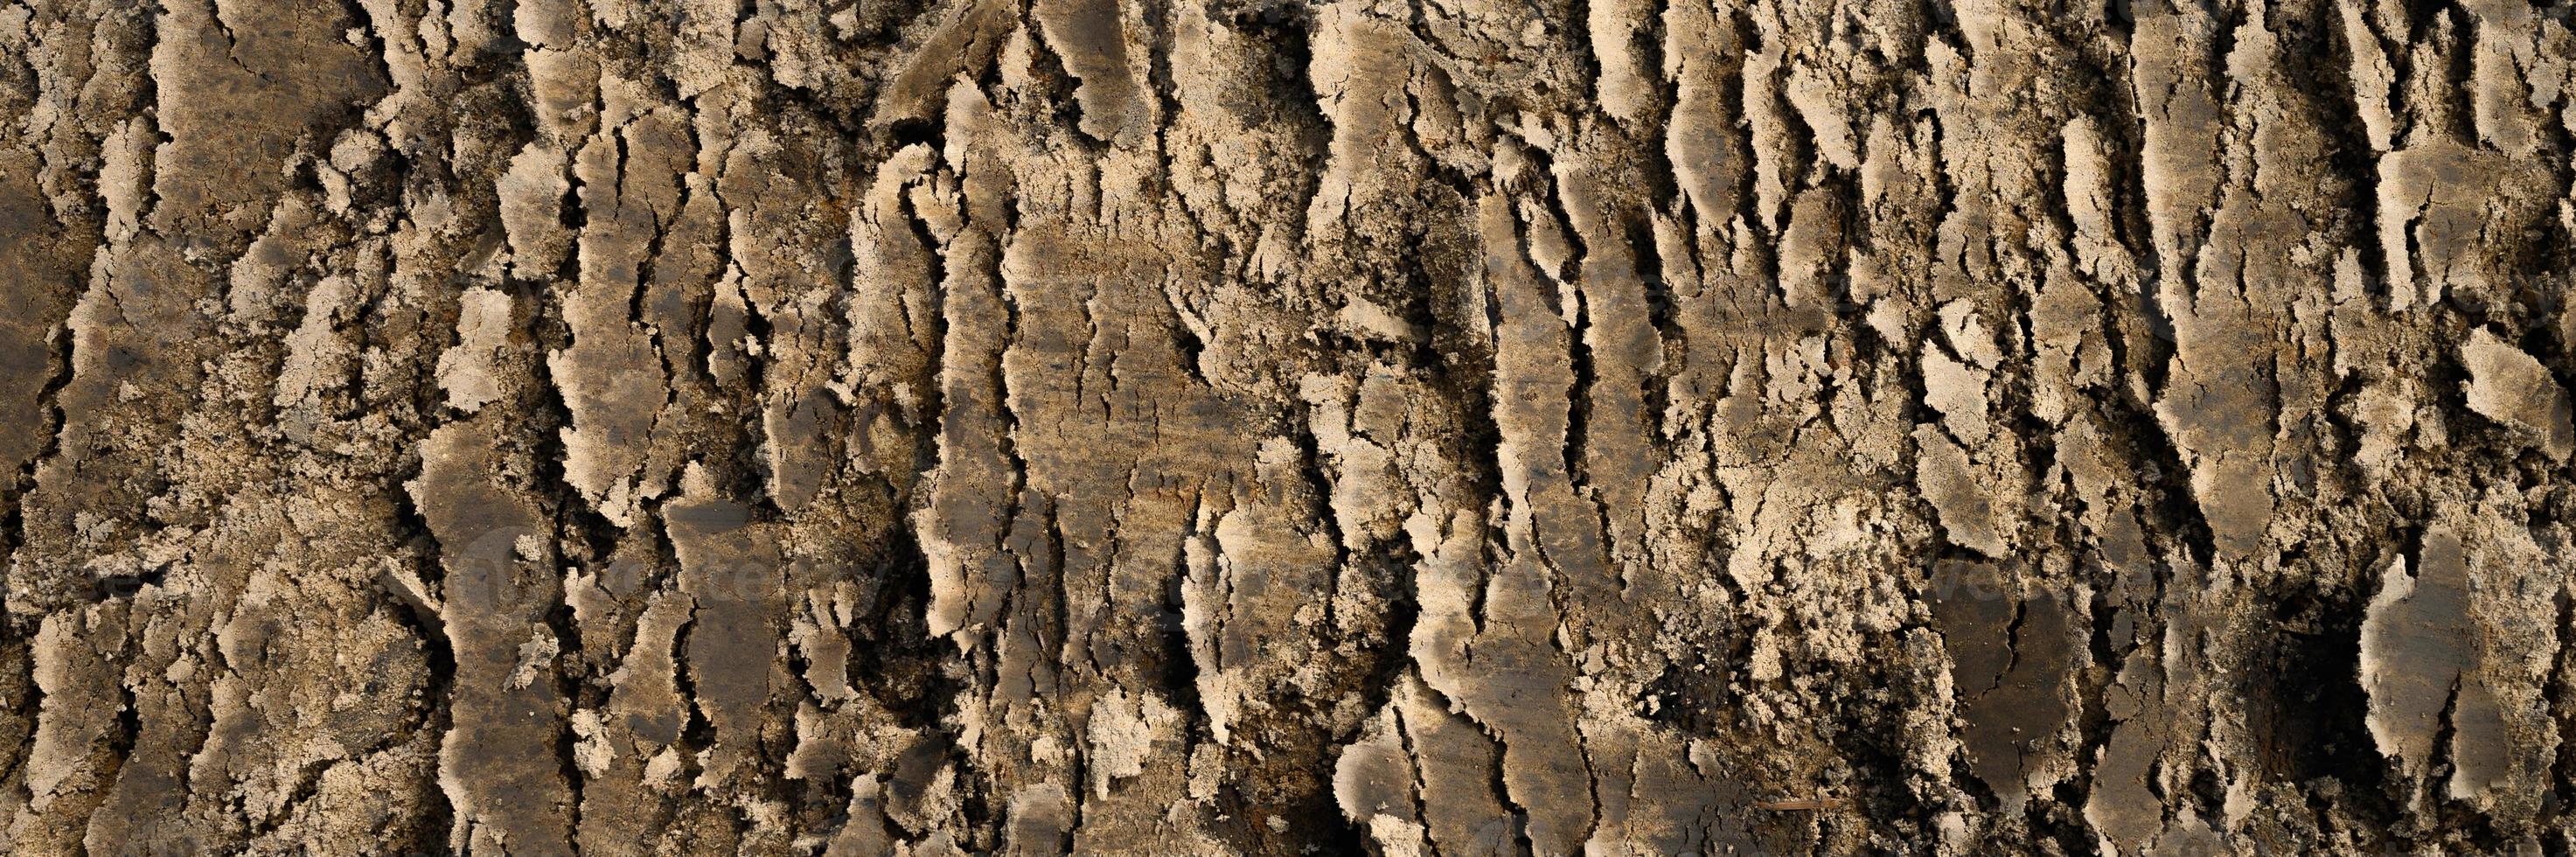 textura de fundo da superfície lisa do solo terrestre foto